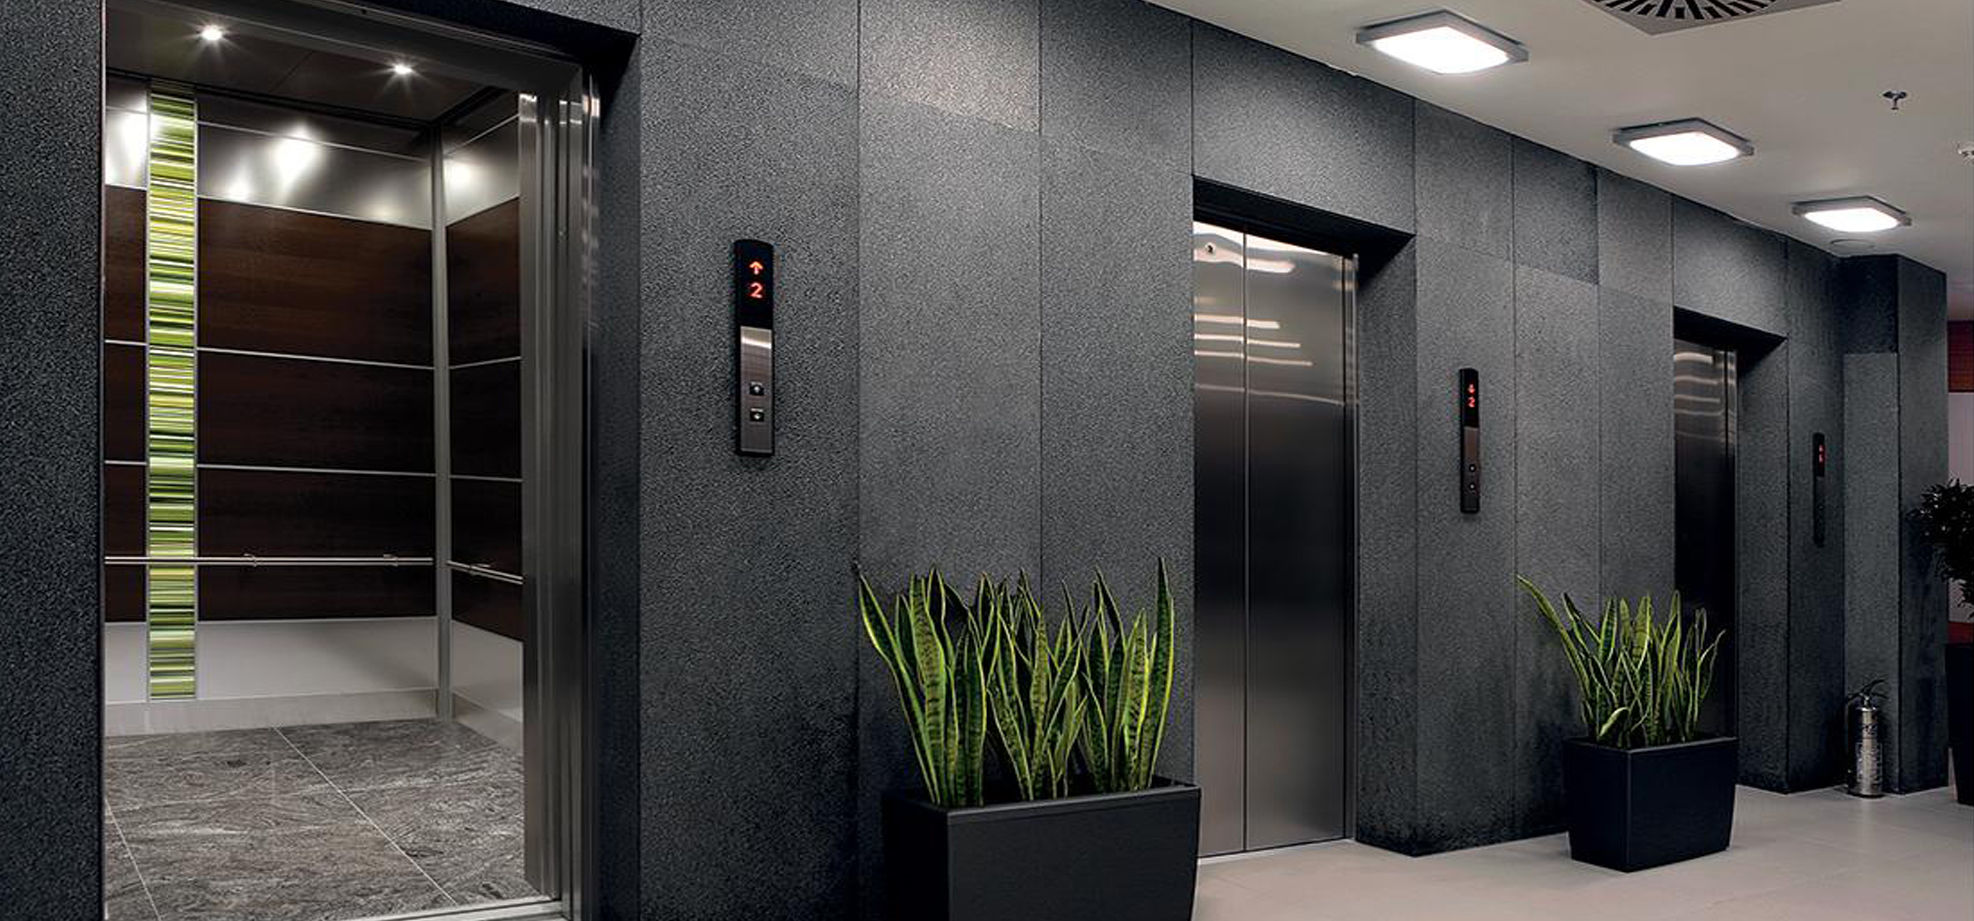 یک پنجم آسانسورهای دولتی استاندارد هستند